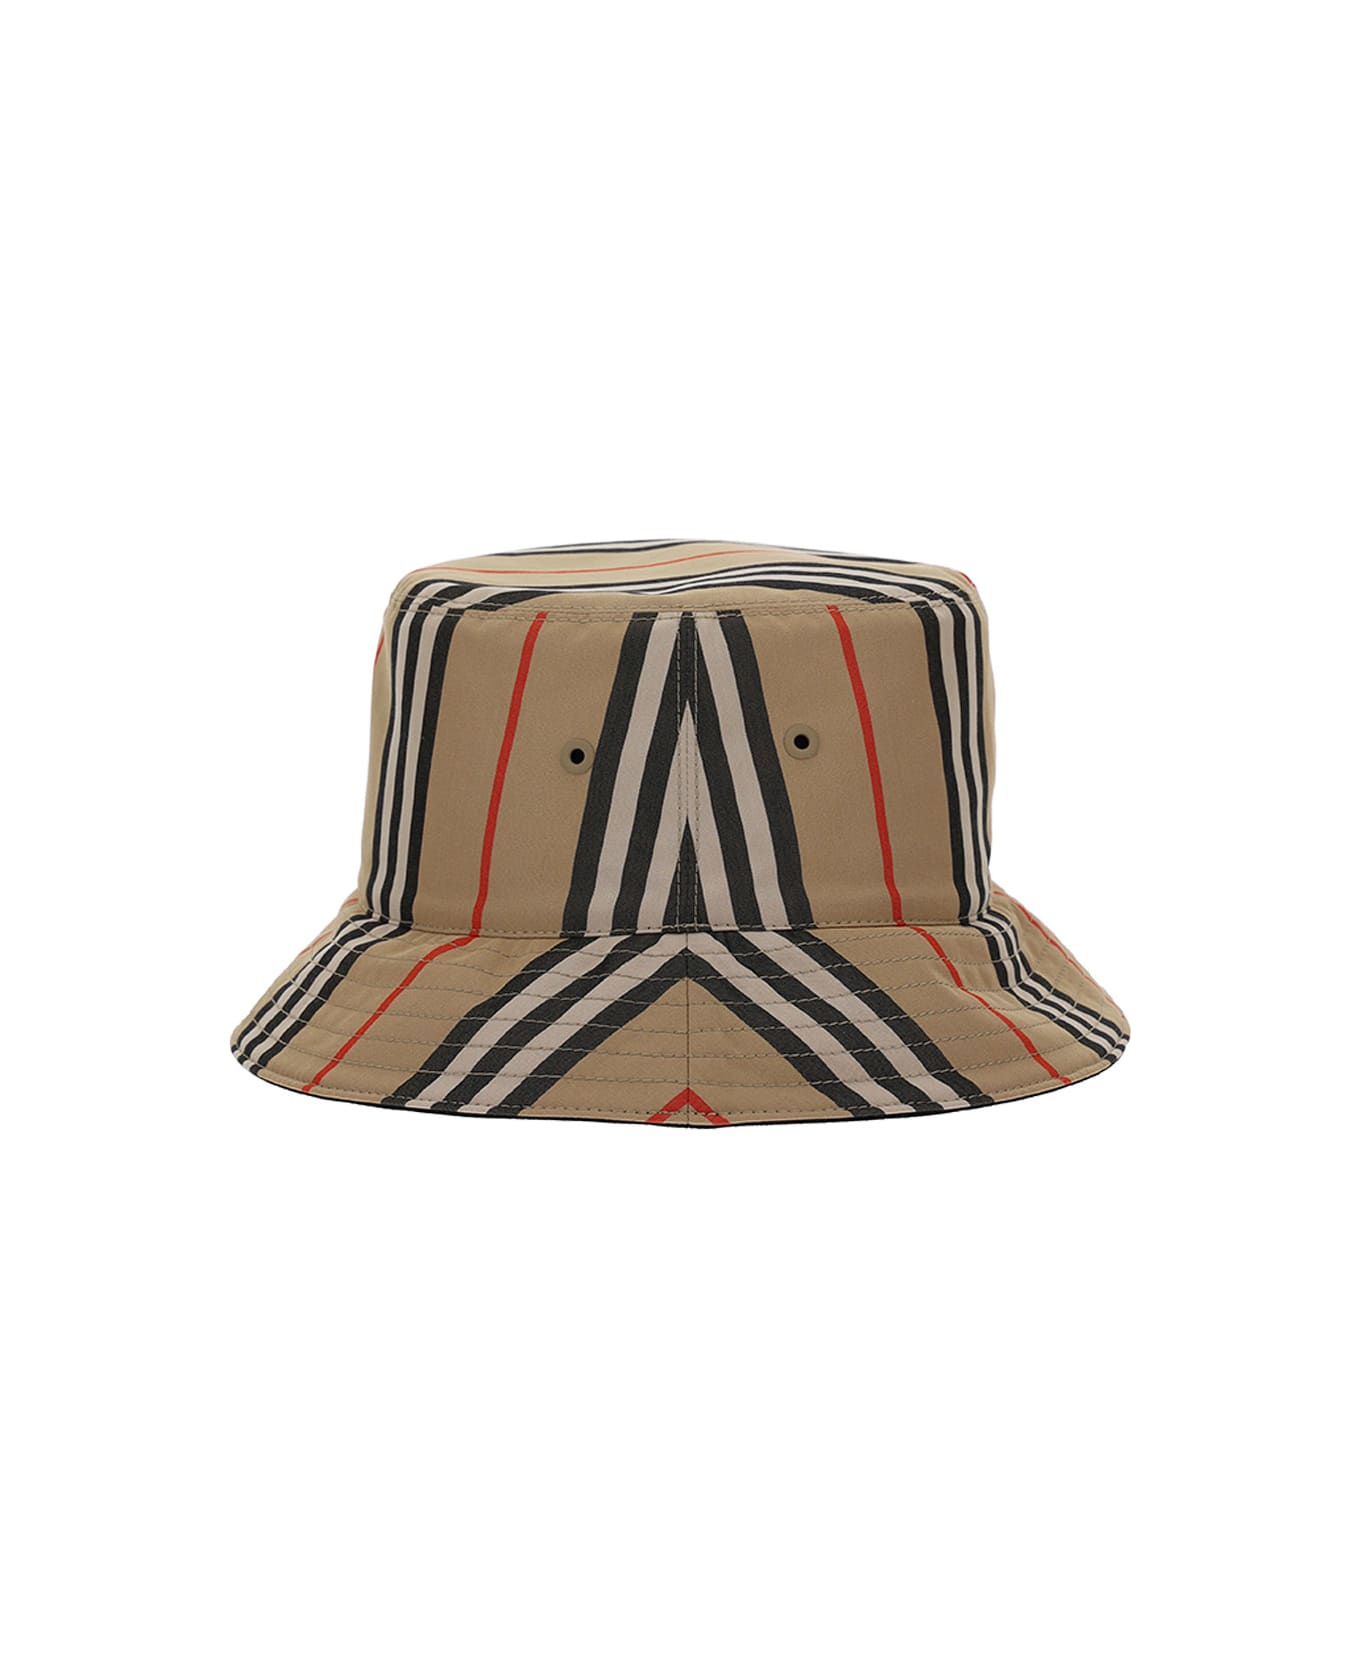 Burberry Bucket Hat - Archive Beige/blck S